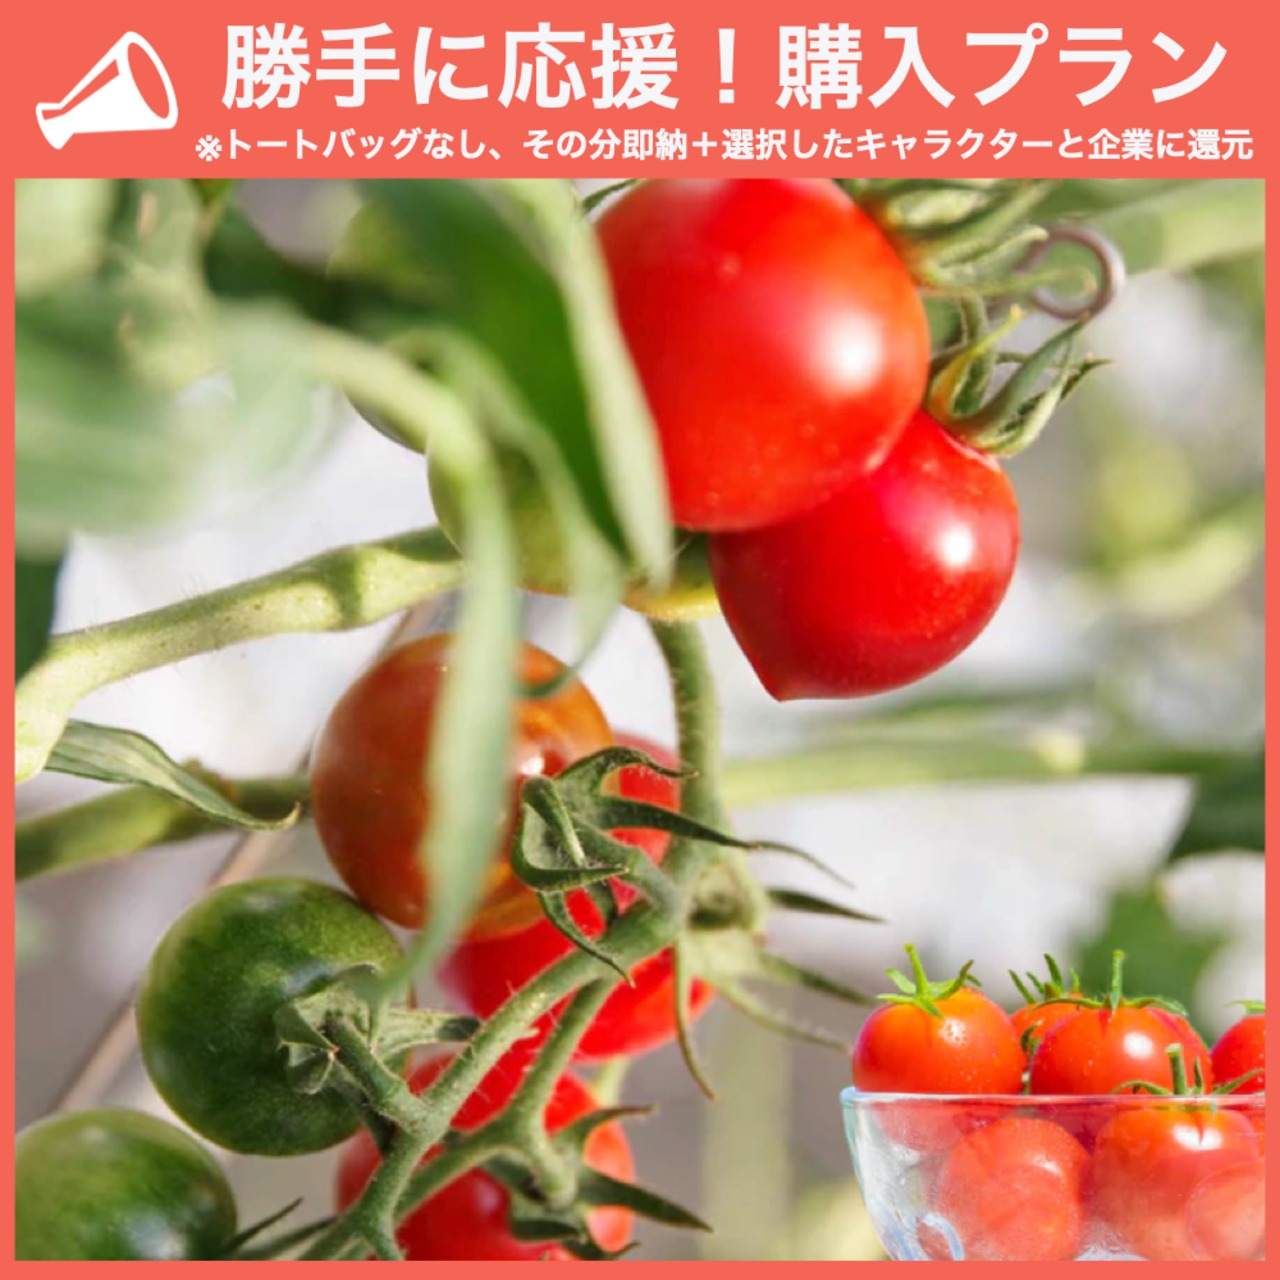 【勝手に応援プラン】壱岐の潮風トマト 1.5kg箱